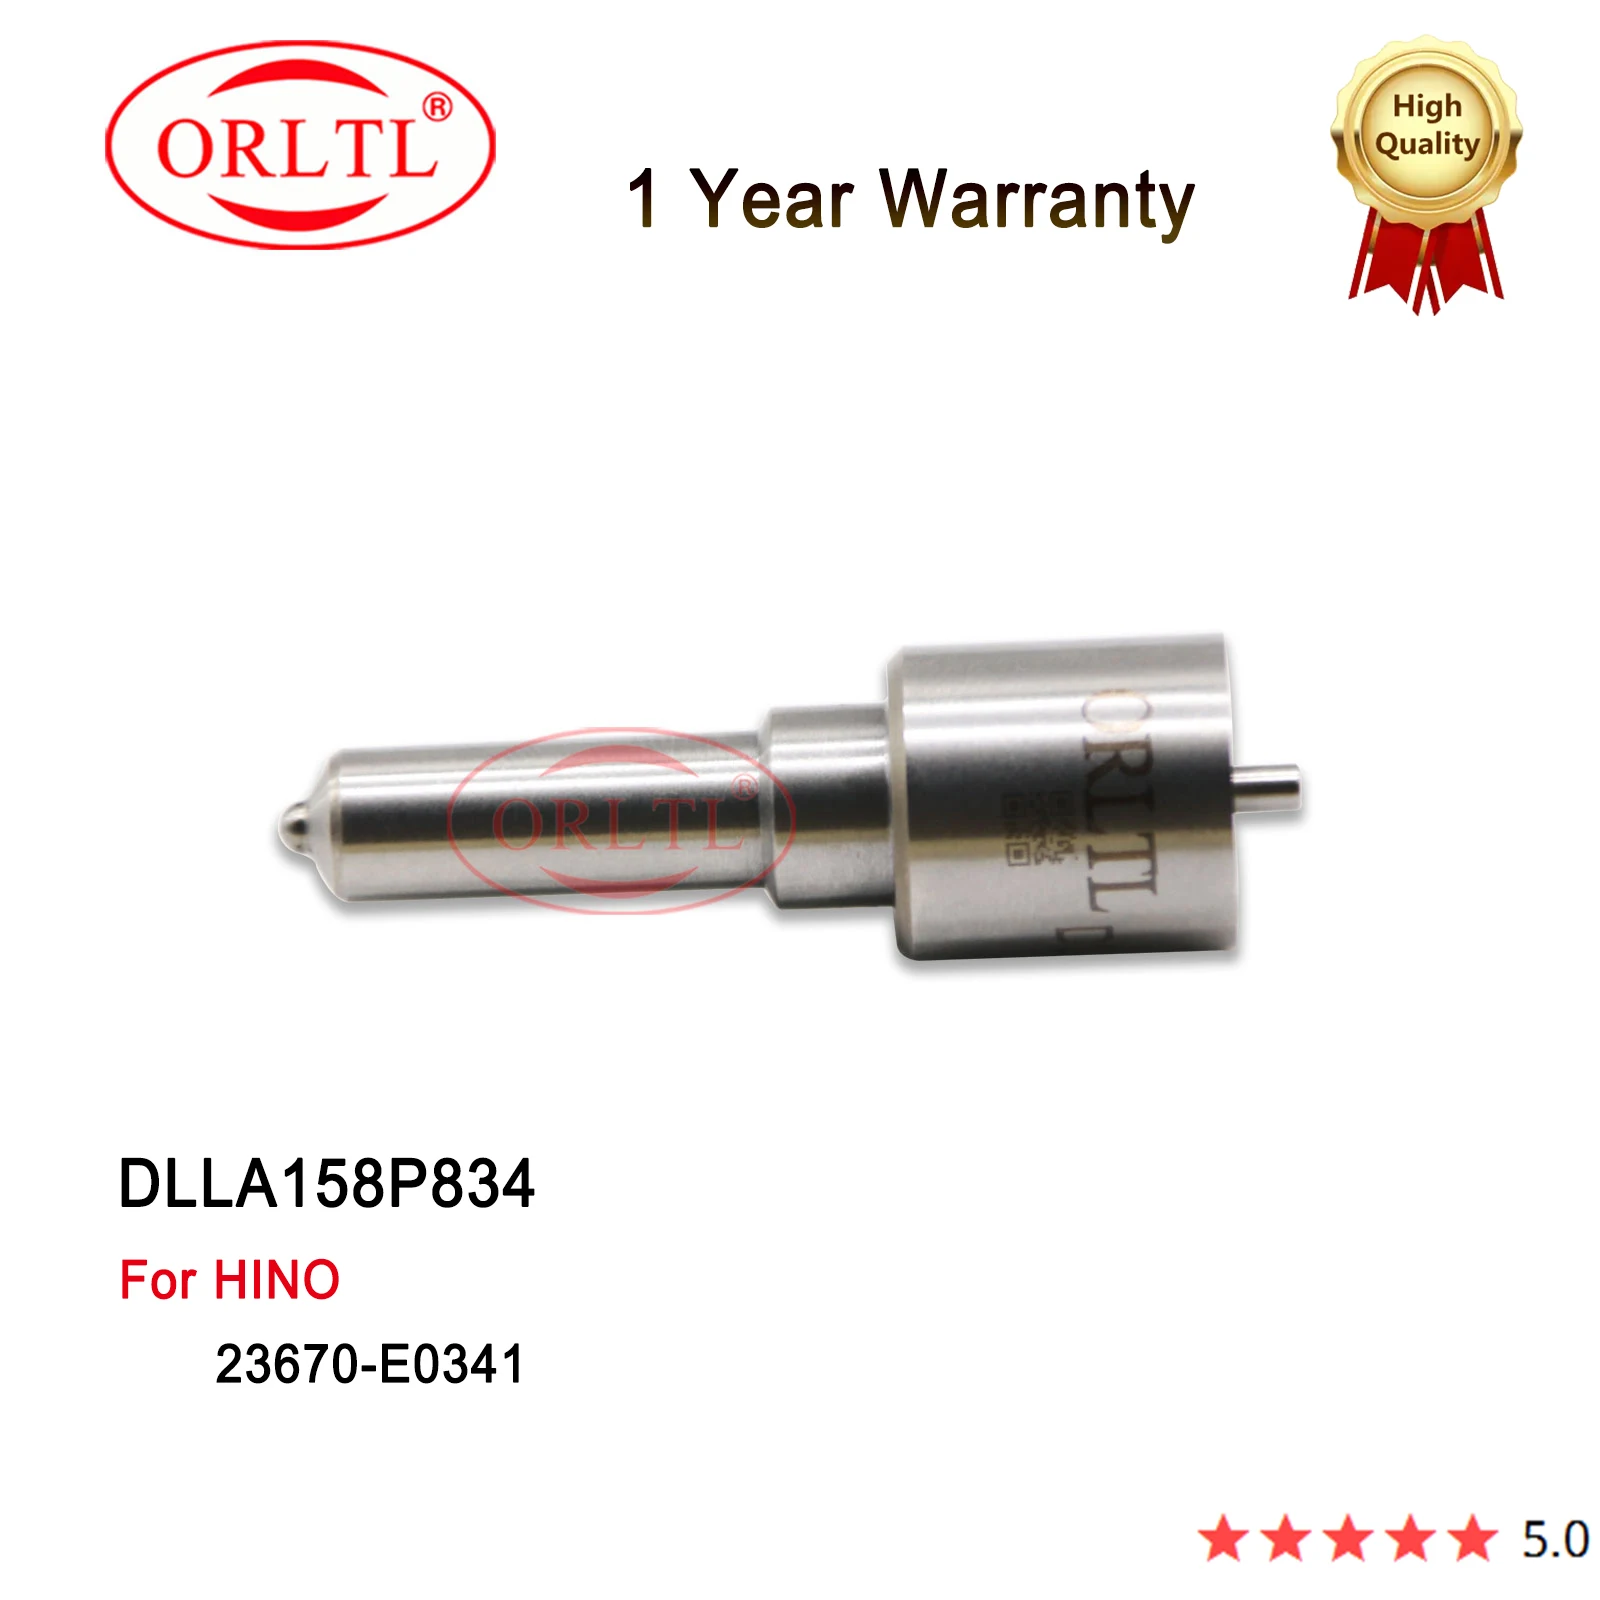 

23670-E0341 Common Rail Injector Nozzle Tips DLLA158P834 093400-8340 For HINO 095000-5220 095000-5223 095000-5224 095000-5225